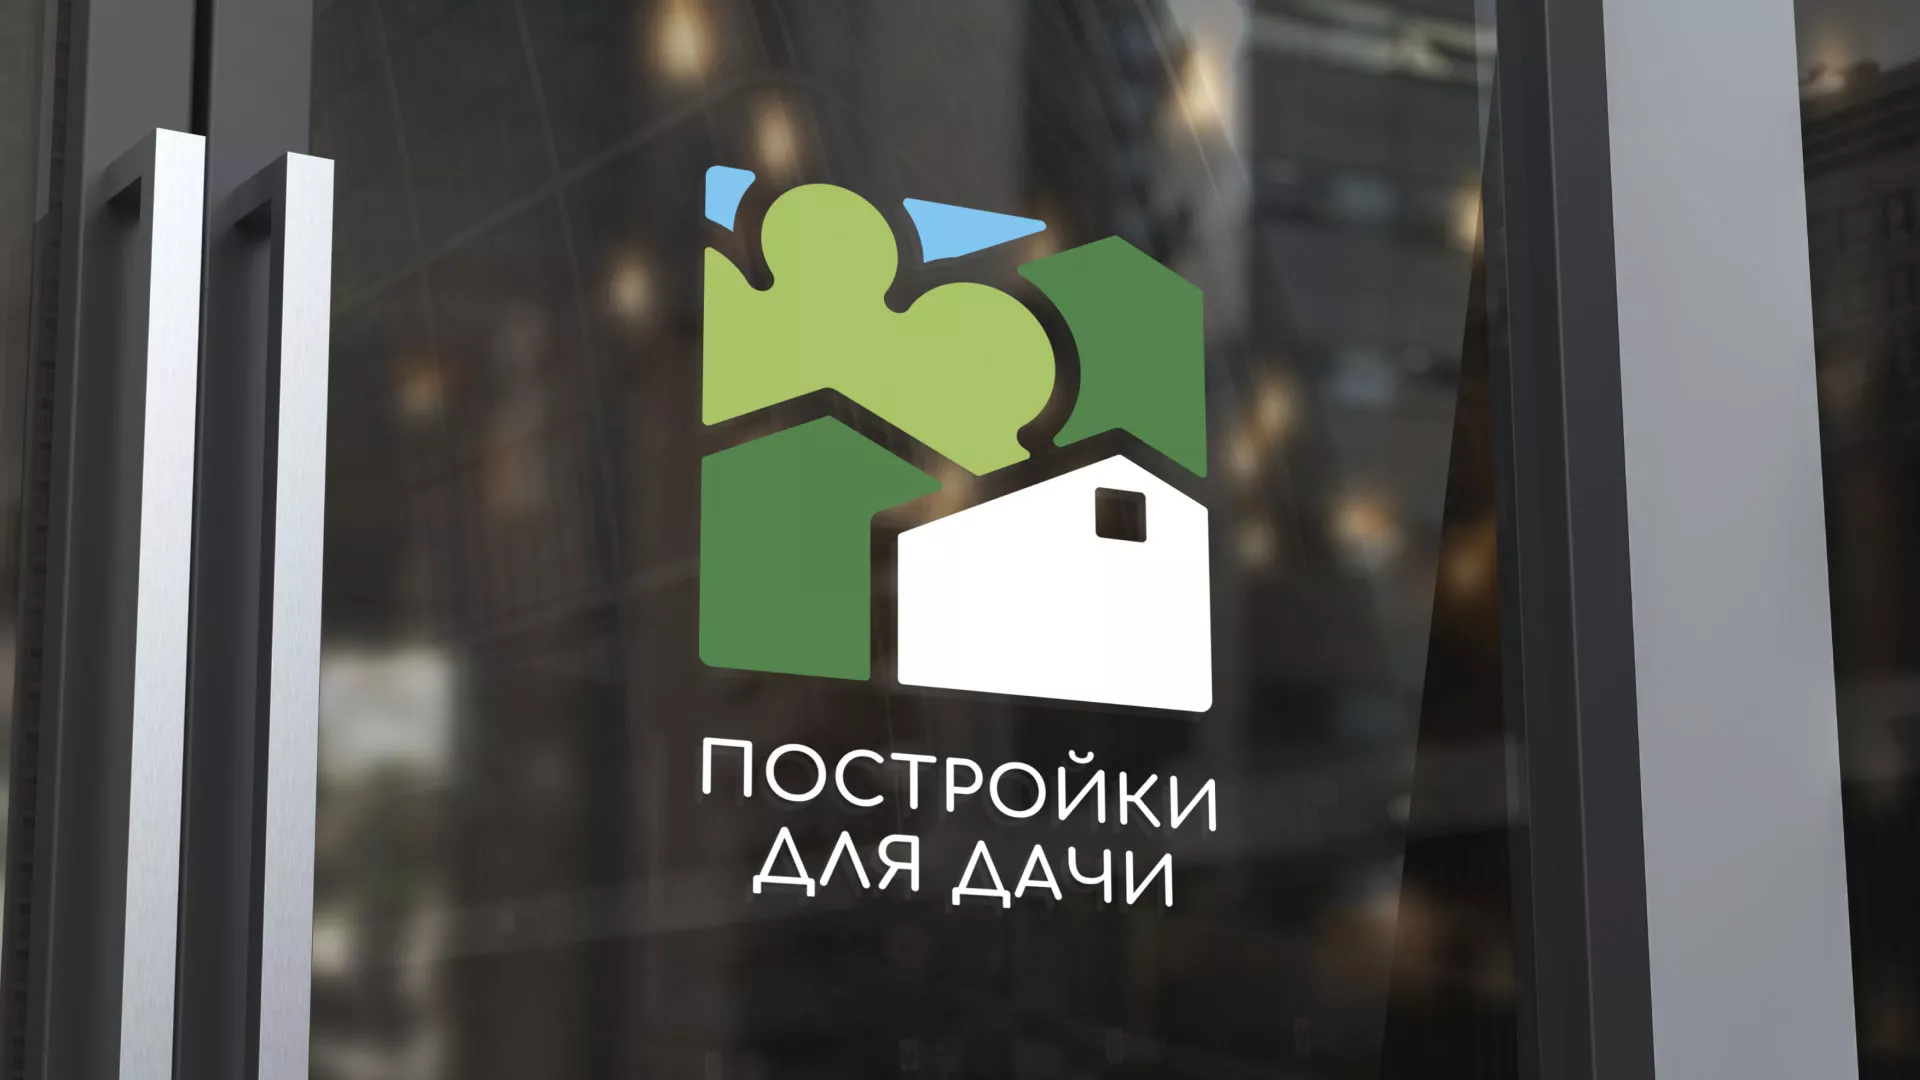 Разработка логотипа в Узловой для компании «Постройки для дачи»